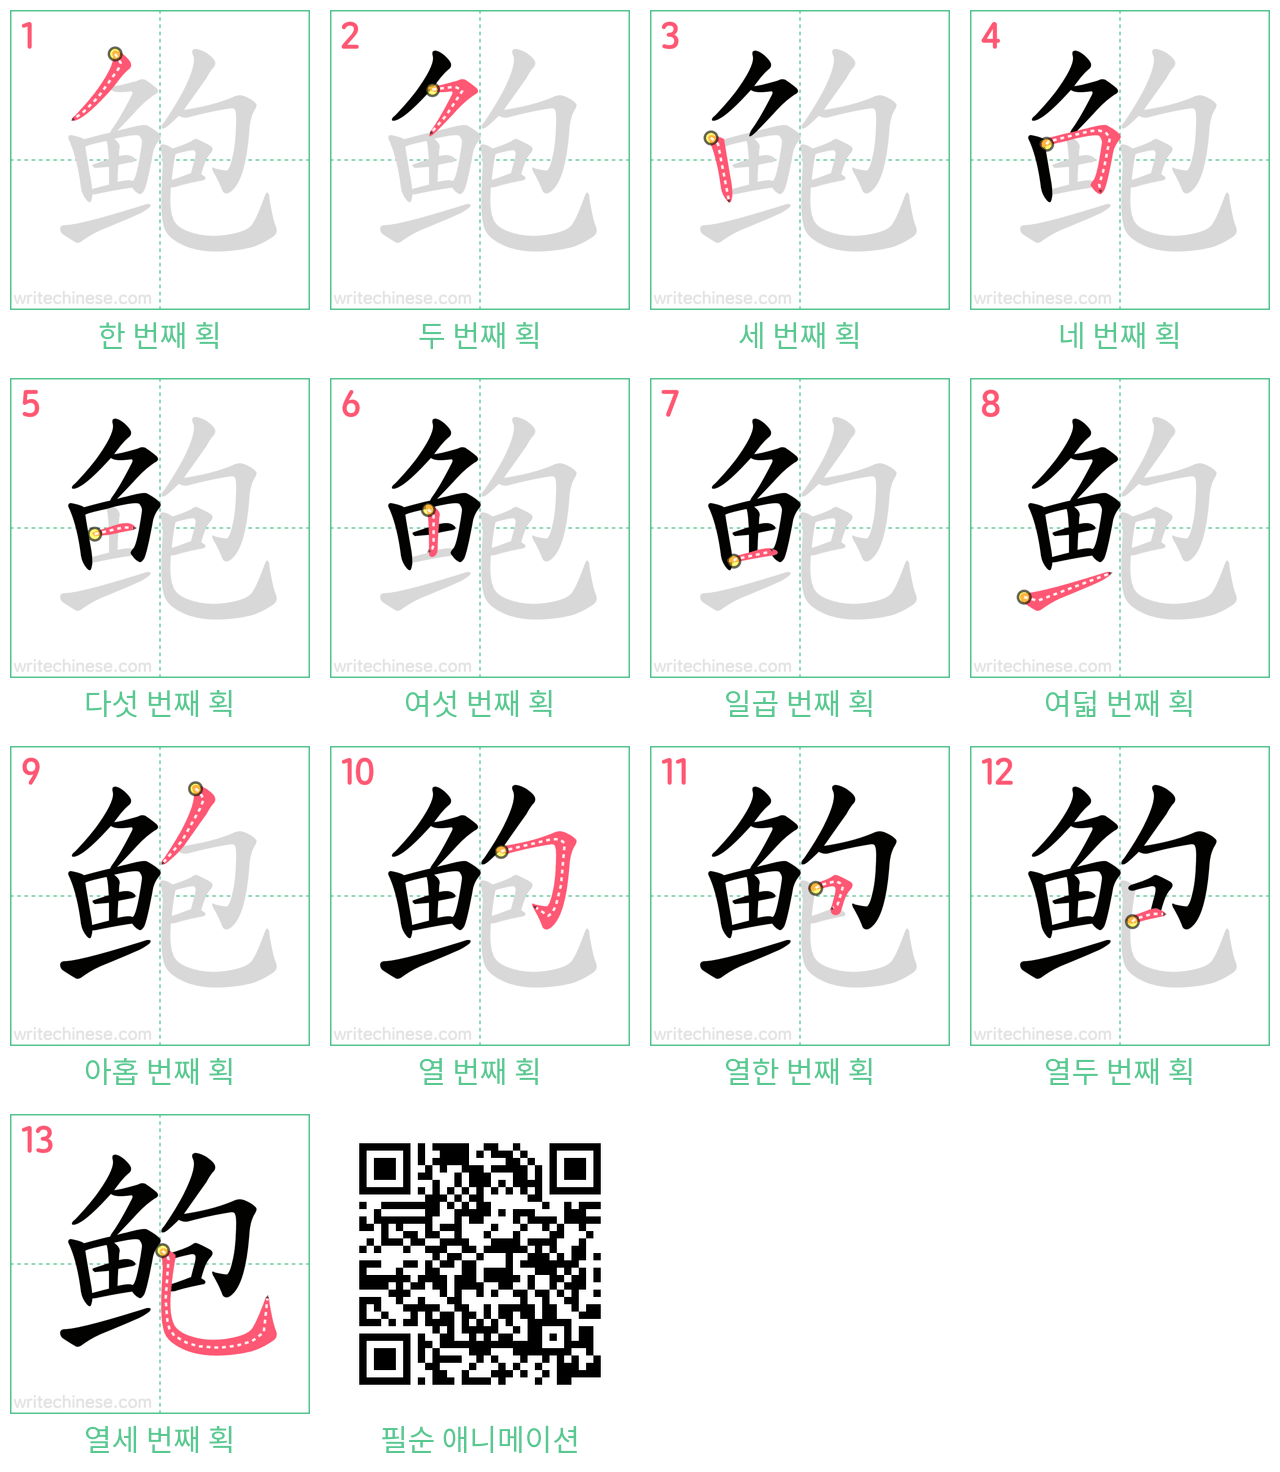 鲍 step-by-step stroke order diagrams